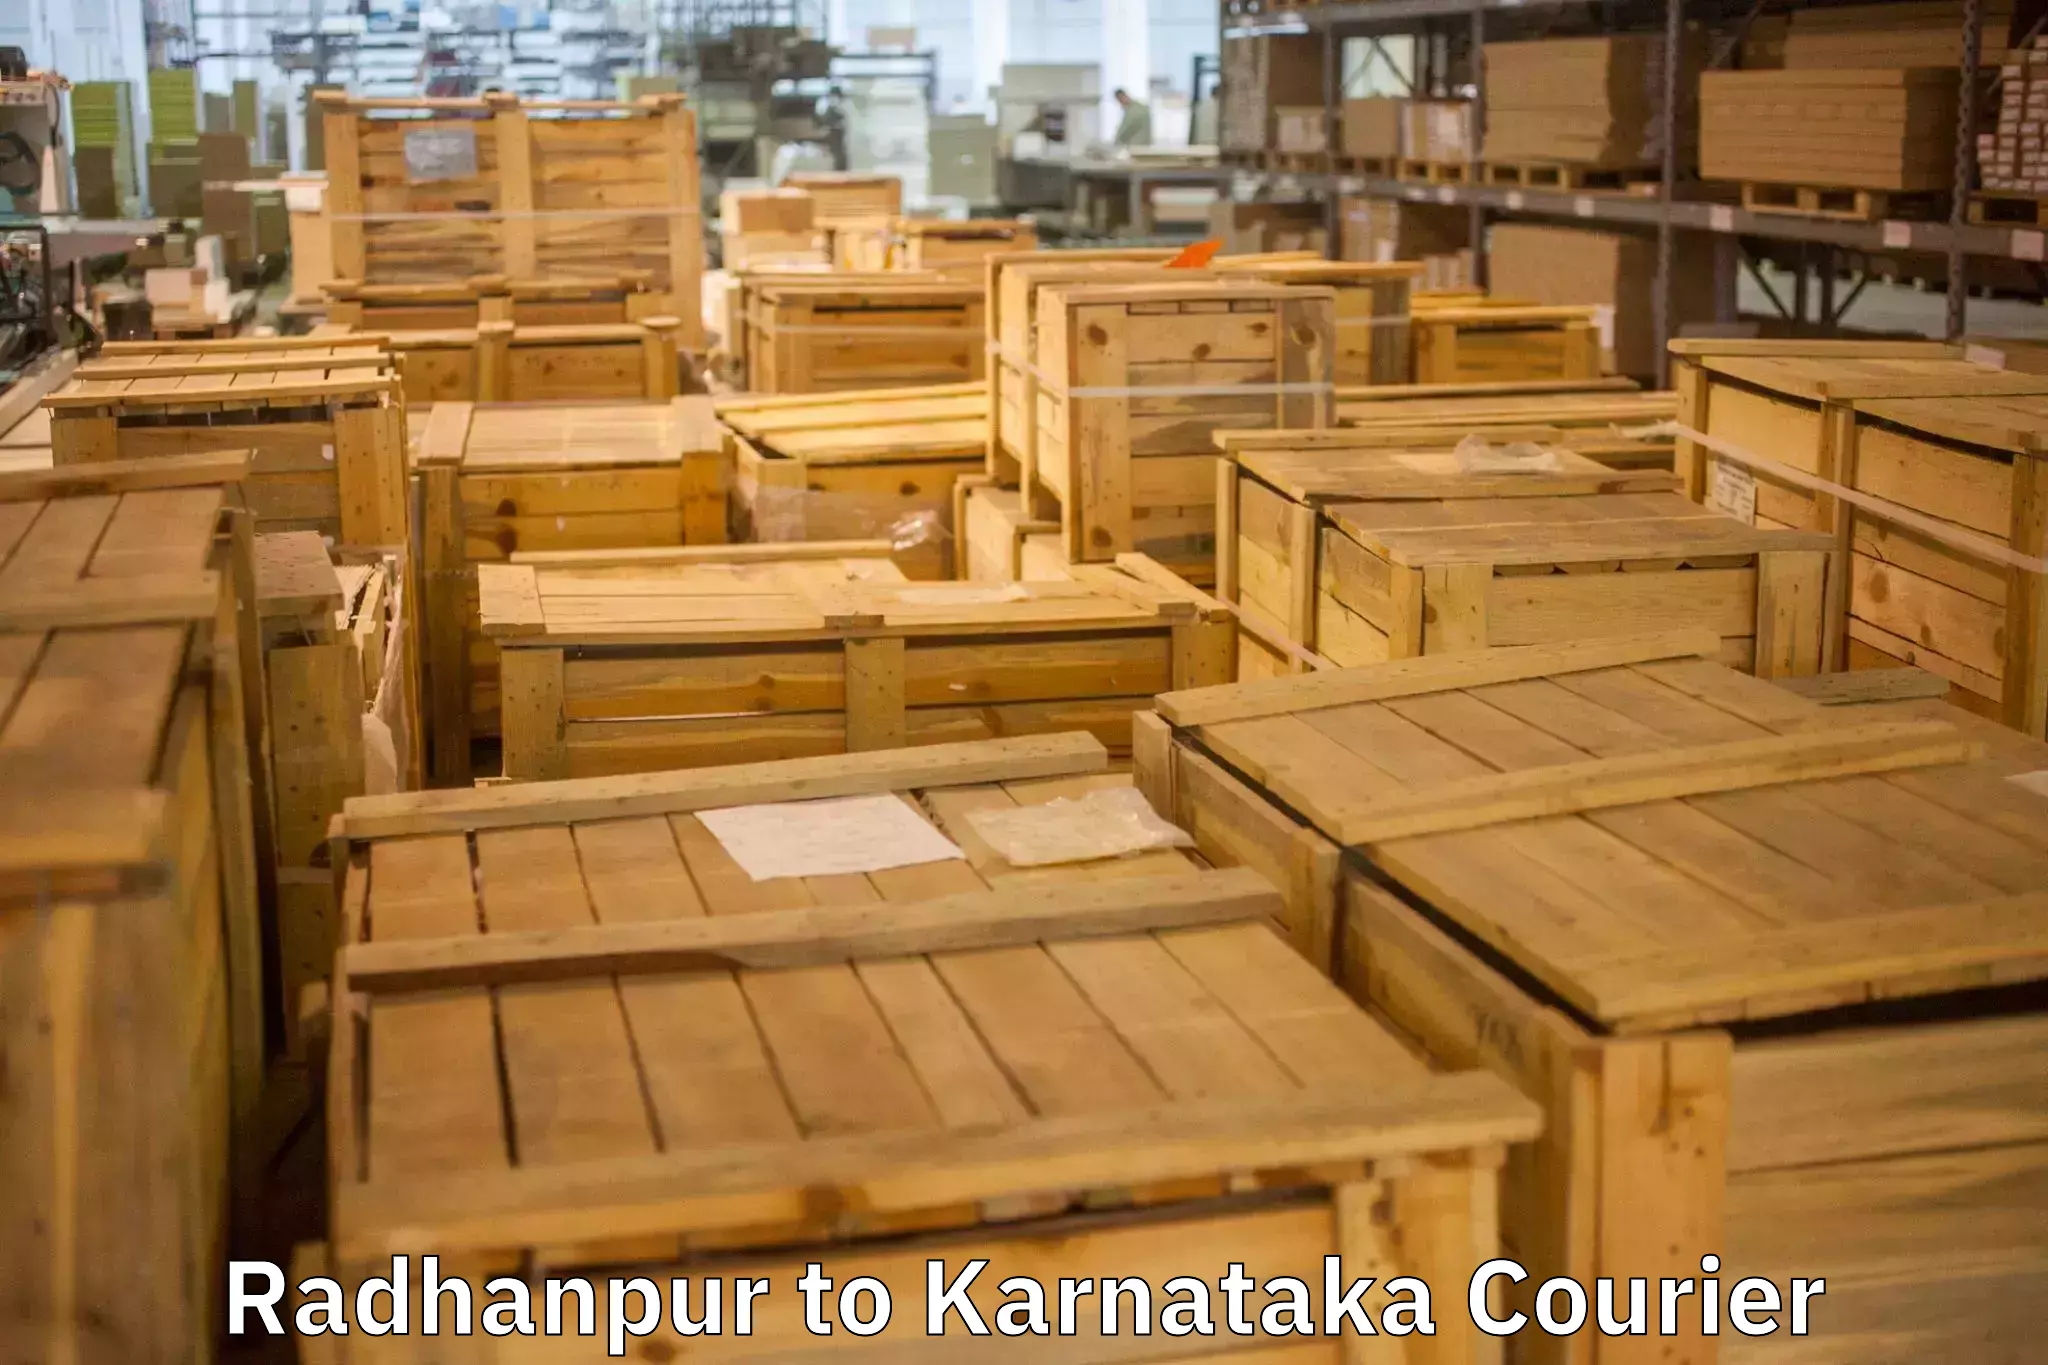 Furniture moving experts Radhanpur to Karnataka